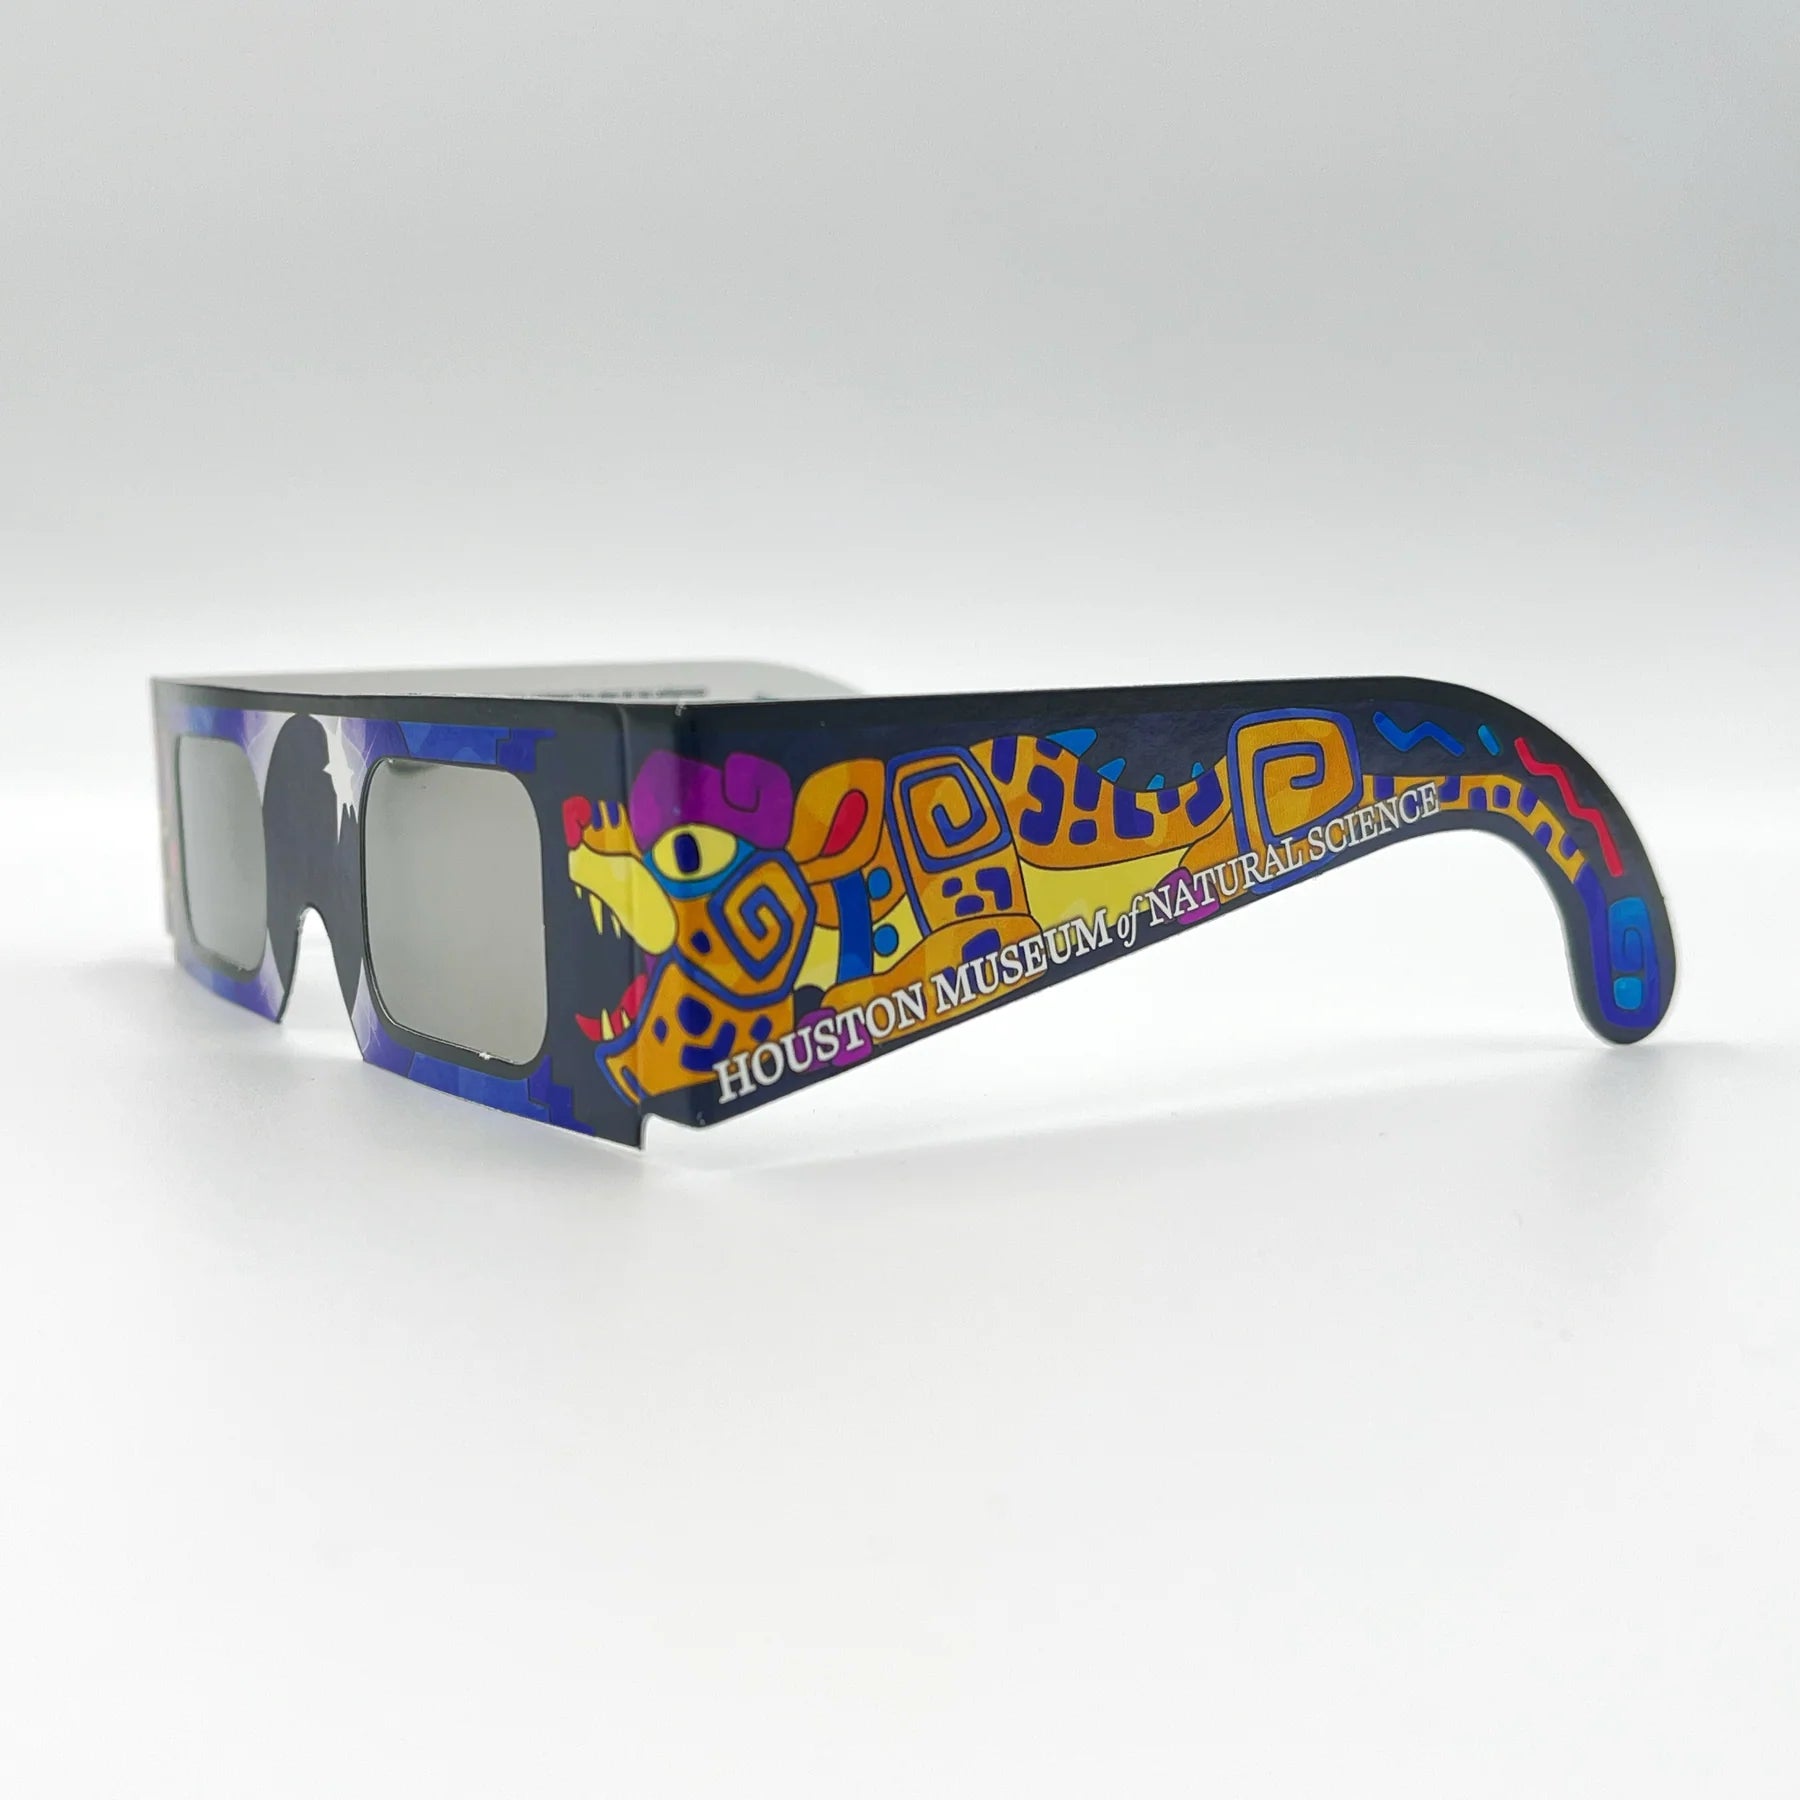 HMNS Paper Eclipse Glasses & Booklet